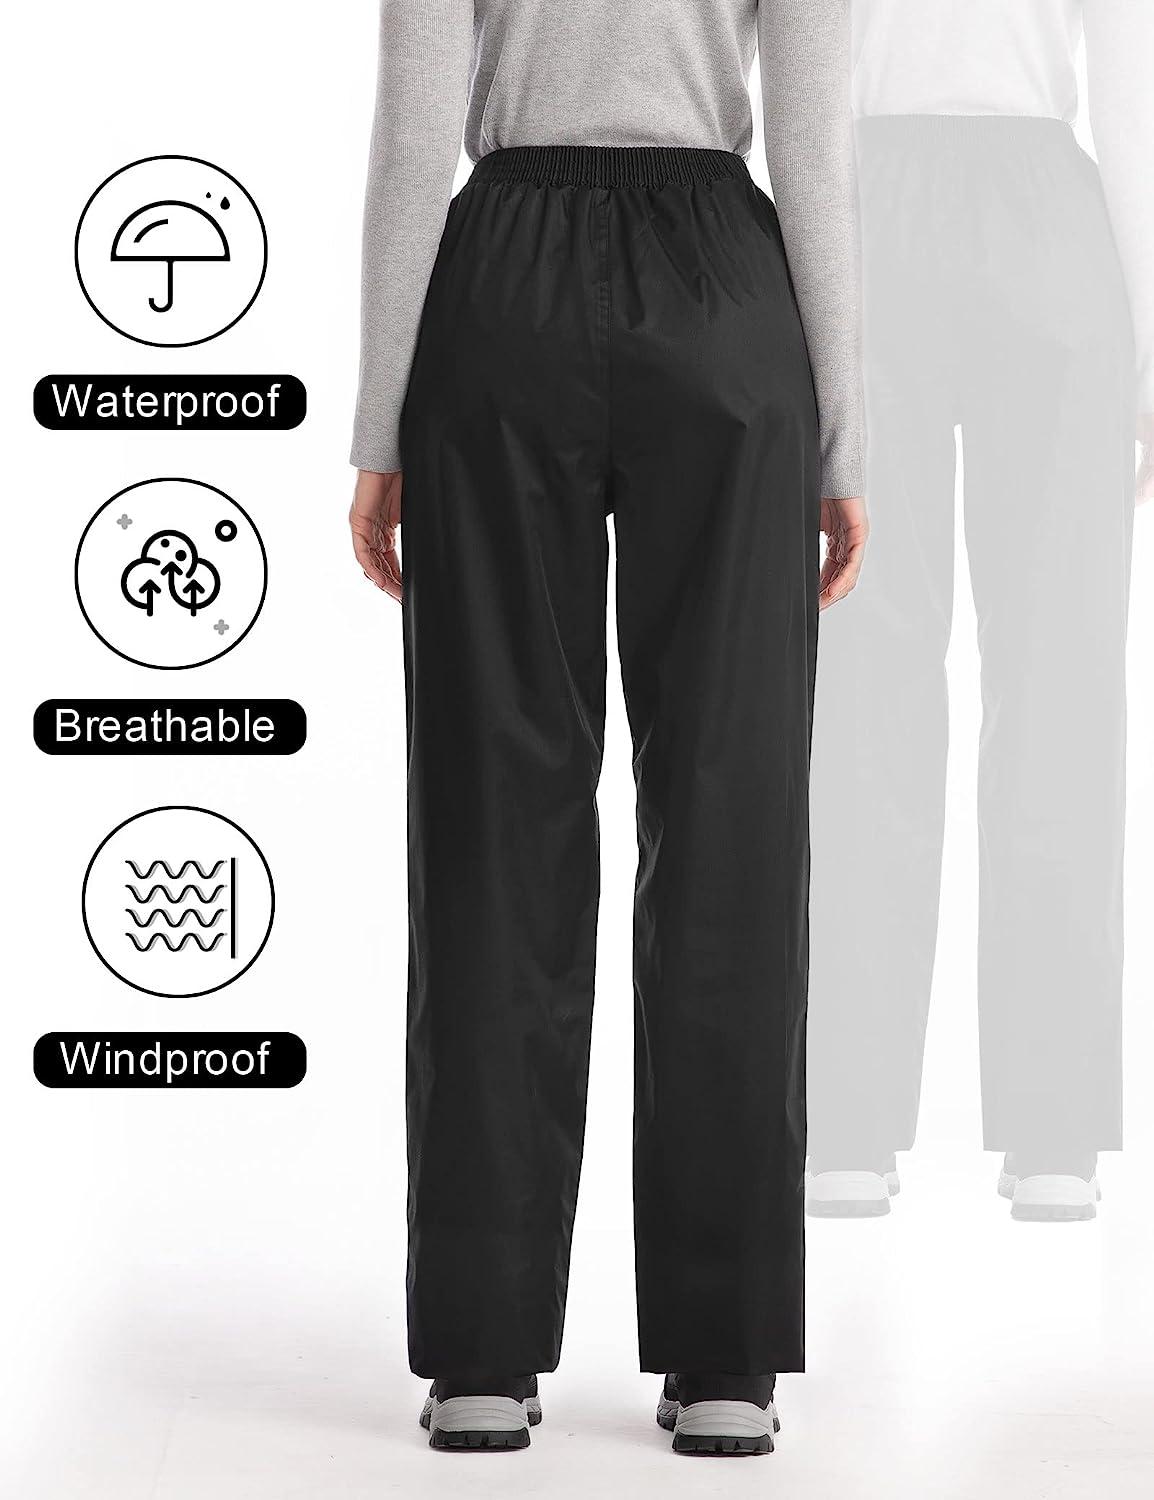 iCreek Women's Rain Pants Waterproof Breathable Windproof